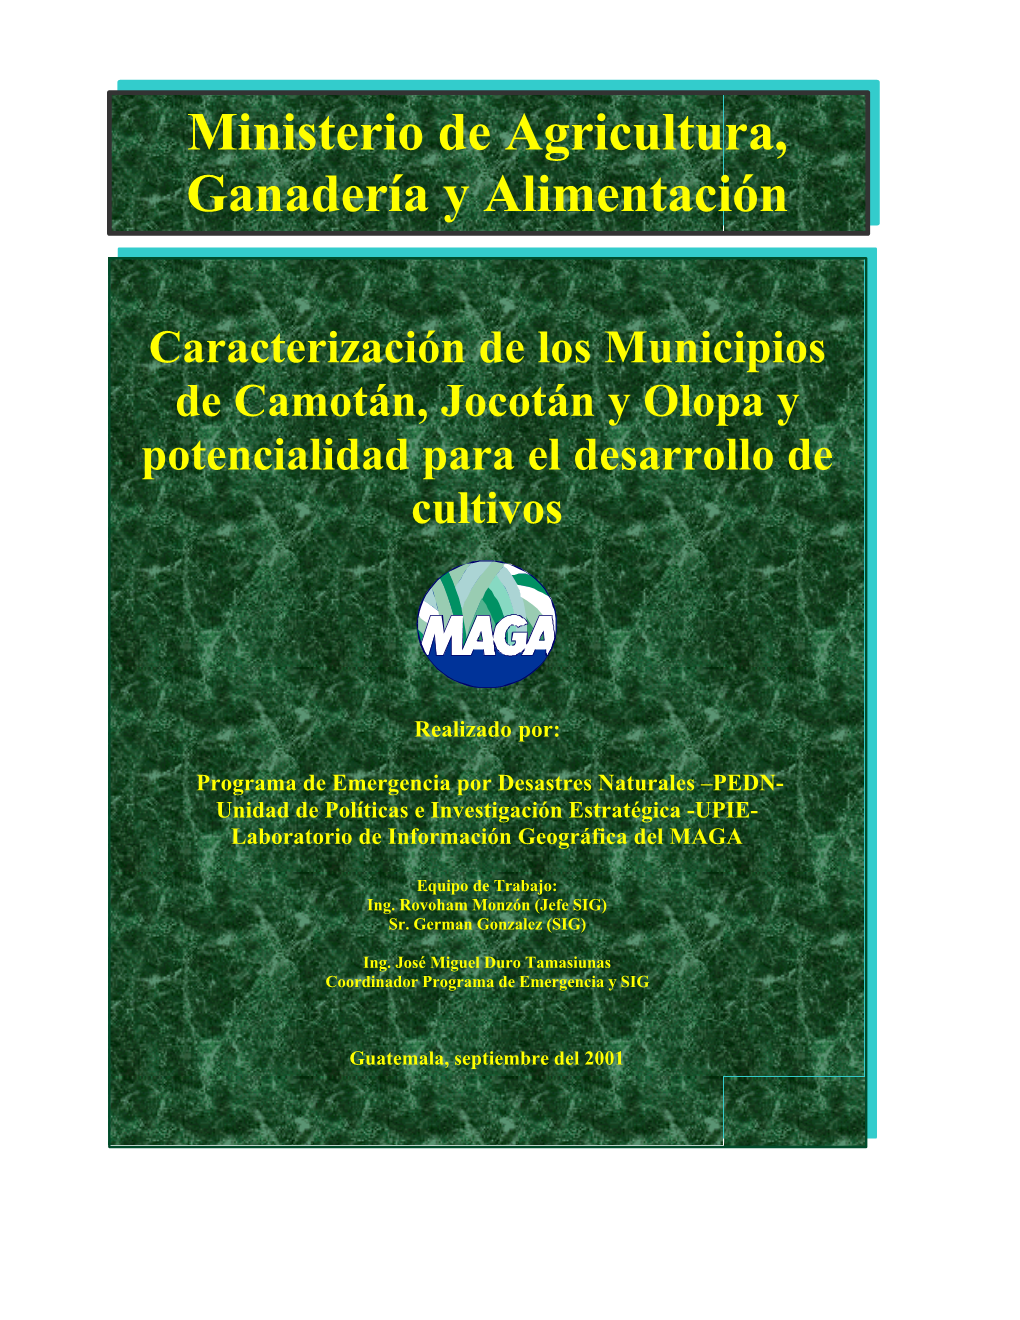 Caracterización De Los Municipios De Camotán, Jocotán Y Olopa Y Potencialidad Para El Desarrollo De Cultivos